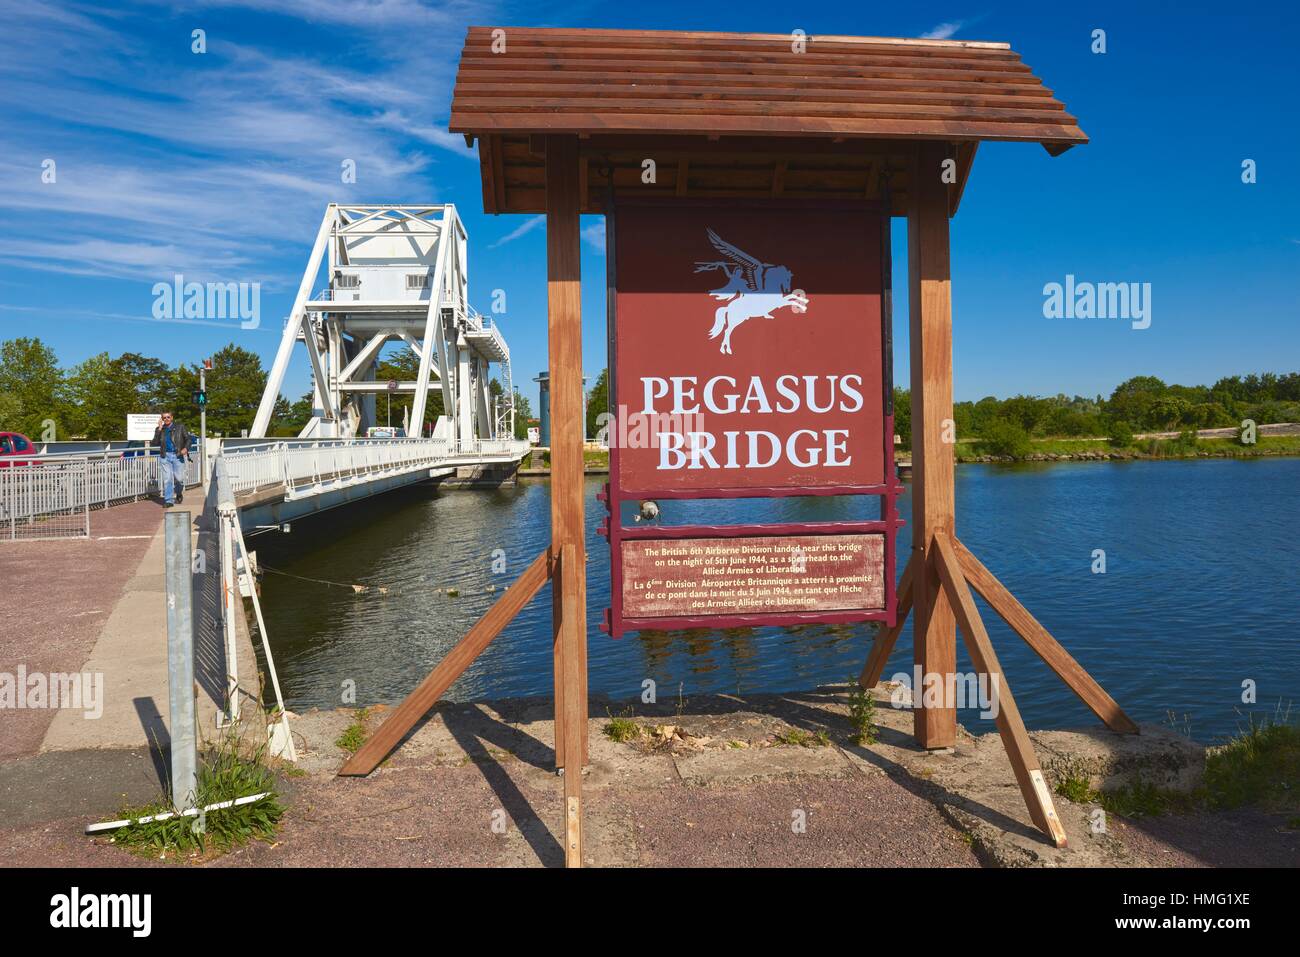 Pegasus Bridge, Zweiter Weltkrieg, caen Canal, bénouville, D-Day Landing Site, BASSE-NORMANDIE. calvados Abteilung, Normandie, Frankreich. Stockfoto